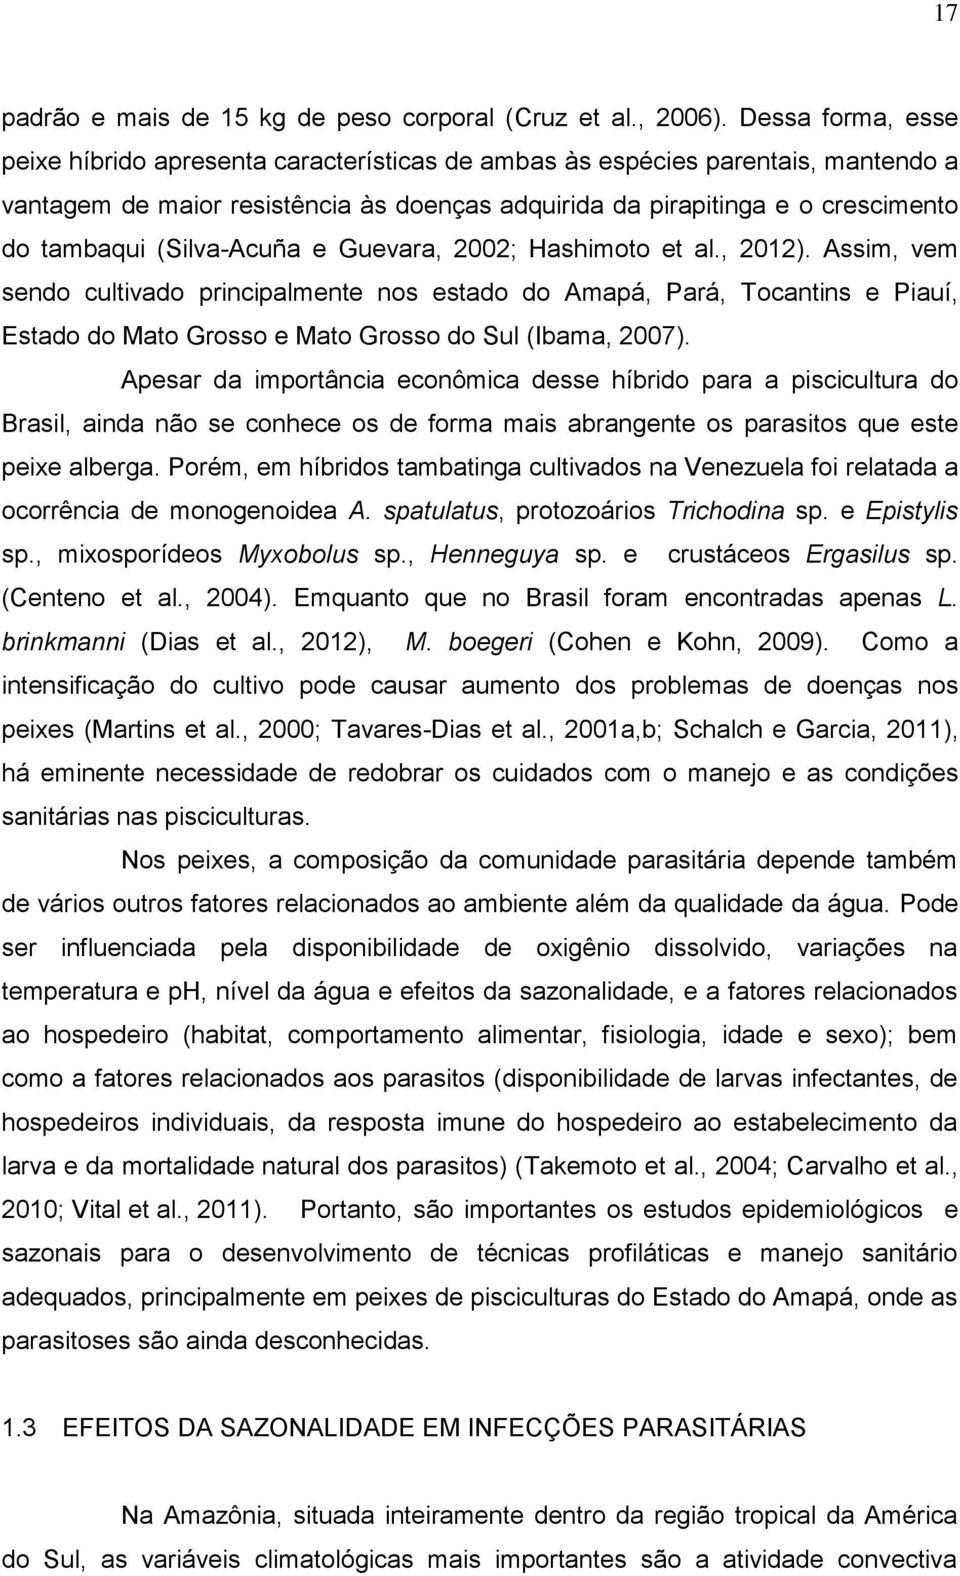 (Silva-Acuña e Guevara, 2002; Hashimoto et al., 2012). Assim, vem sendo cultivado principalmente nos estado do Amapá, Pará, Tocantins e Piauí, Estado do Mato Grosso e Mato Grosso do Sul (Ibama, 2007).